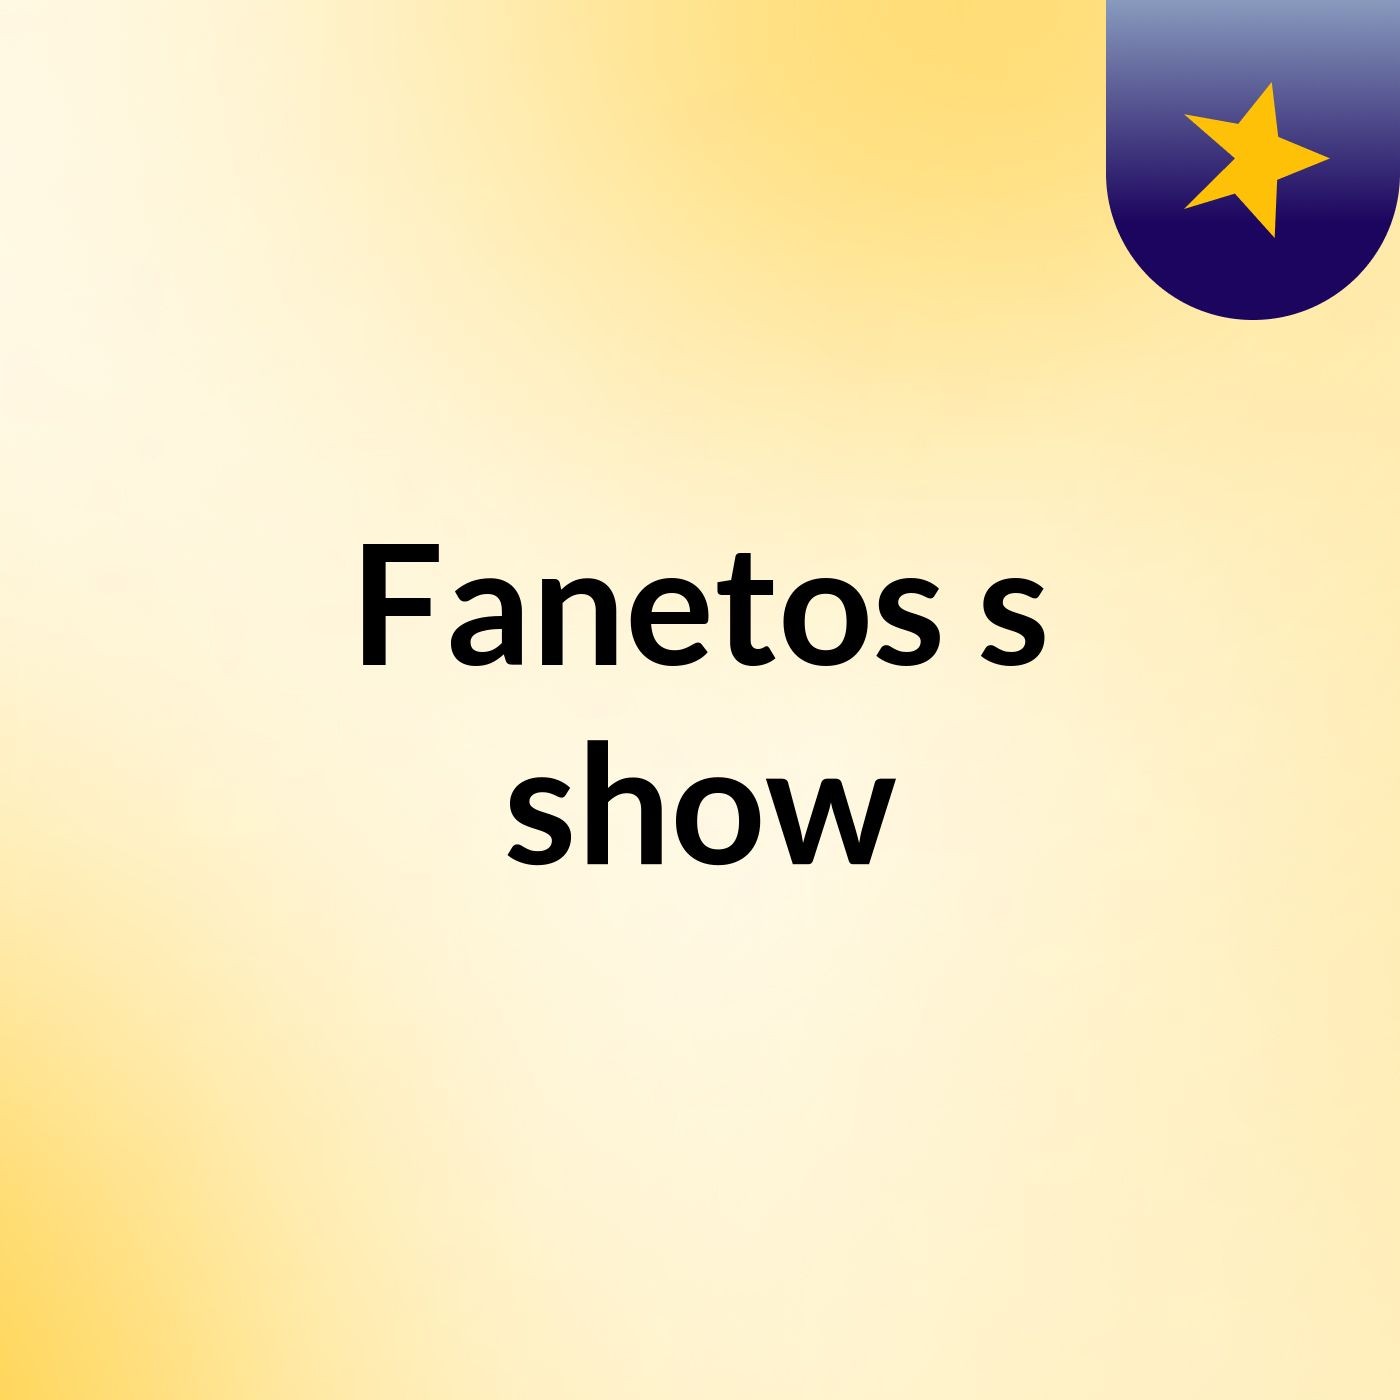 Fanetos's show